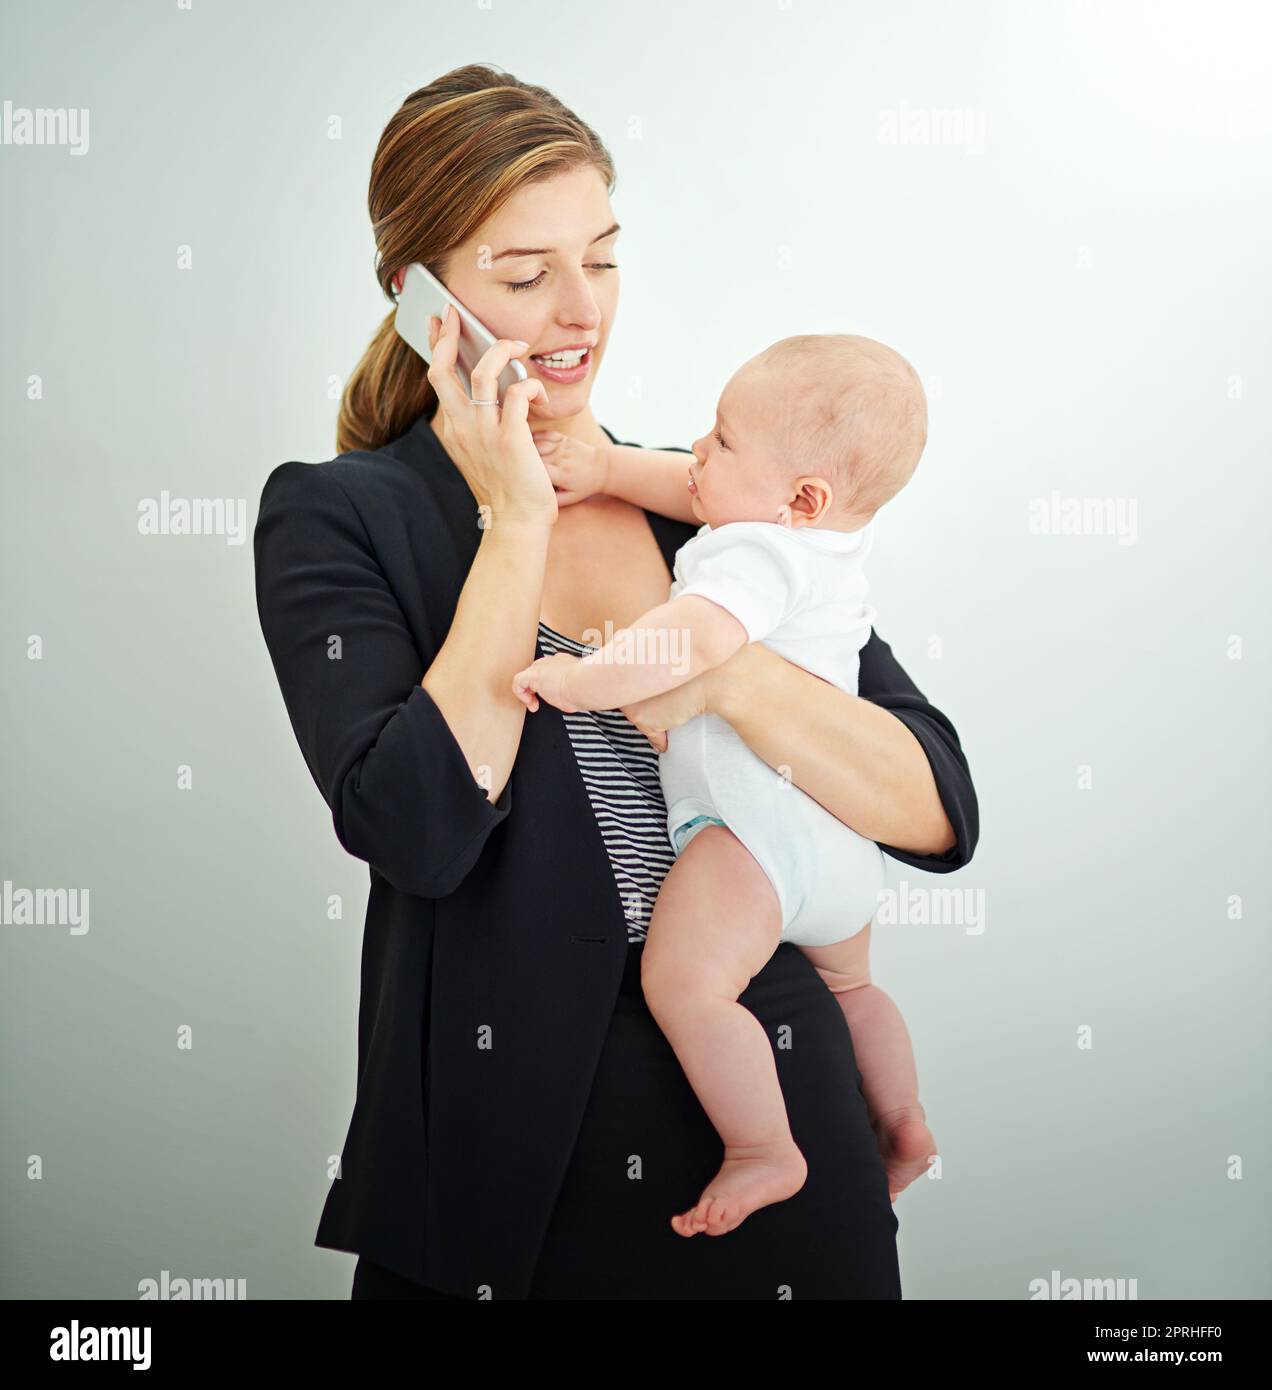 Prendendosi cura del bambino e del commercio. Una giovane donna d'affari riuscita che trasporta il suo bambino adorable mentre parla al telefono. Foto Stock